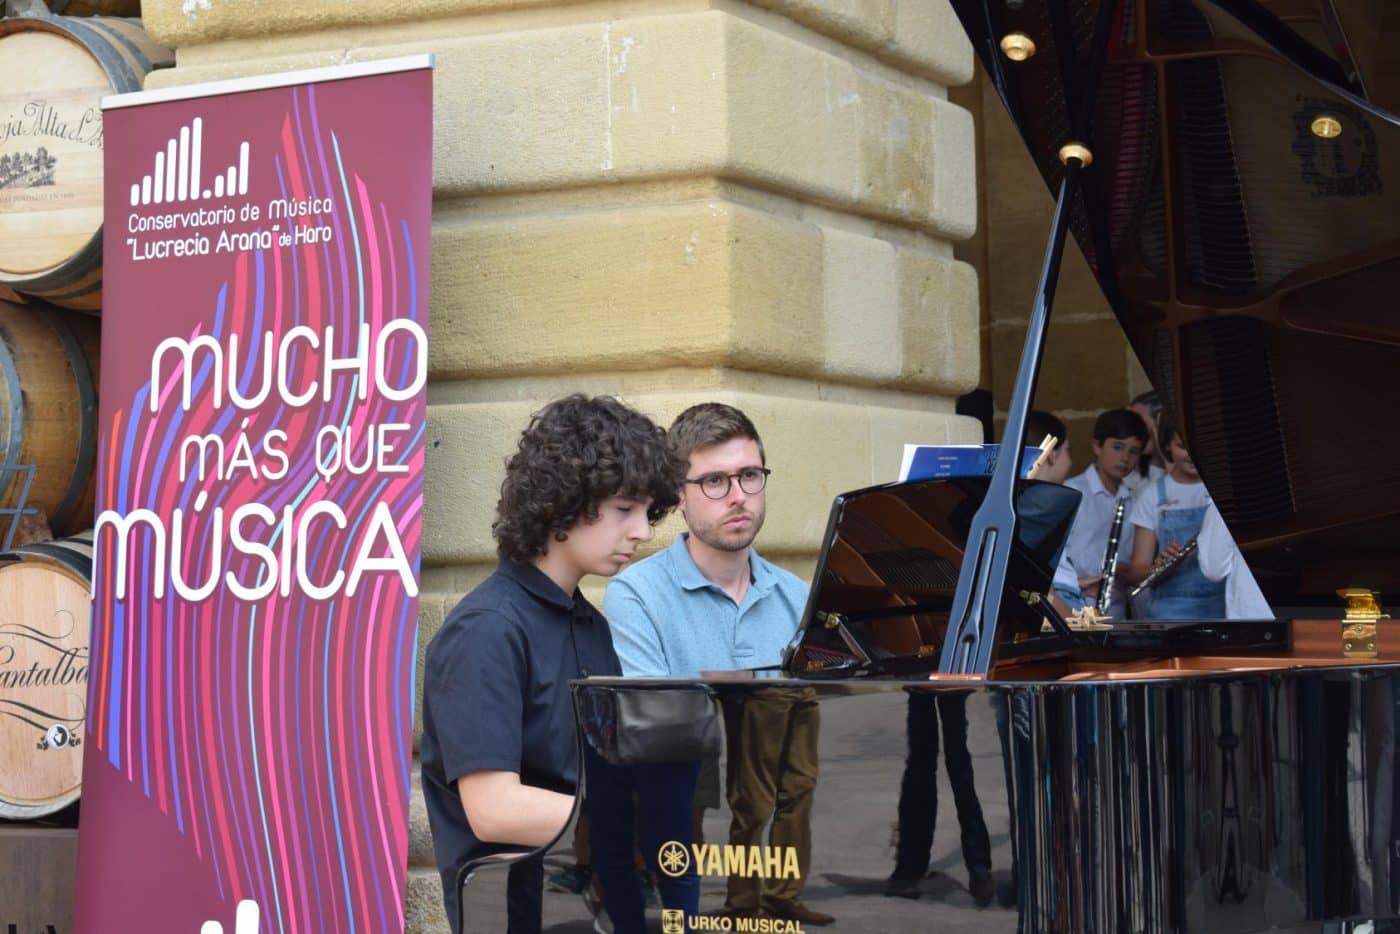 FOTOS: El Conservatorio Lucrecia Arana celebra el fin de curso sacando la música a la calle 15